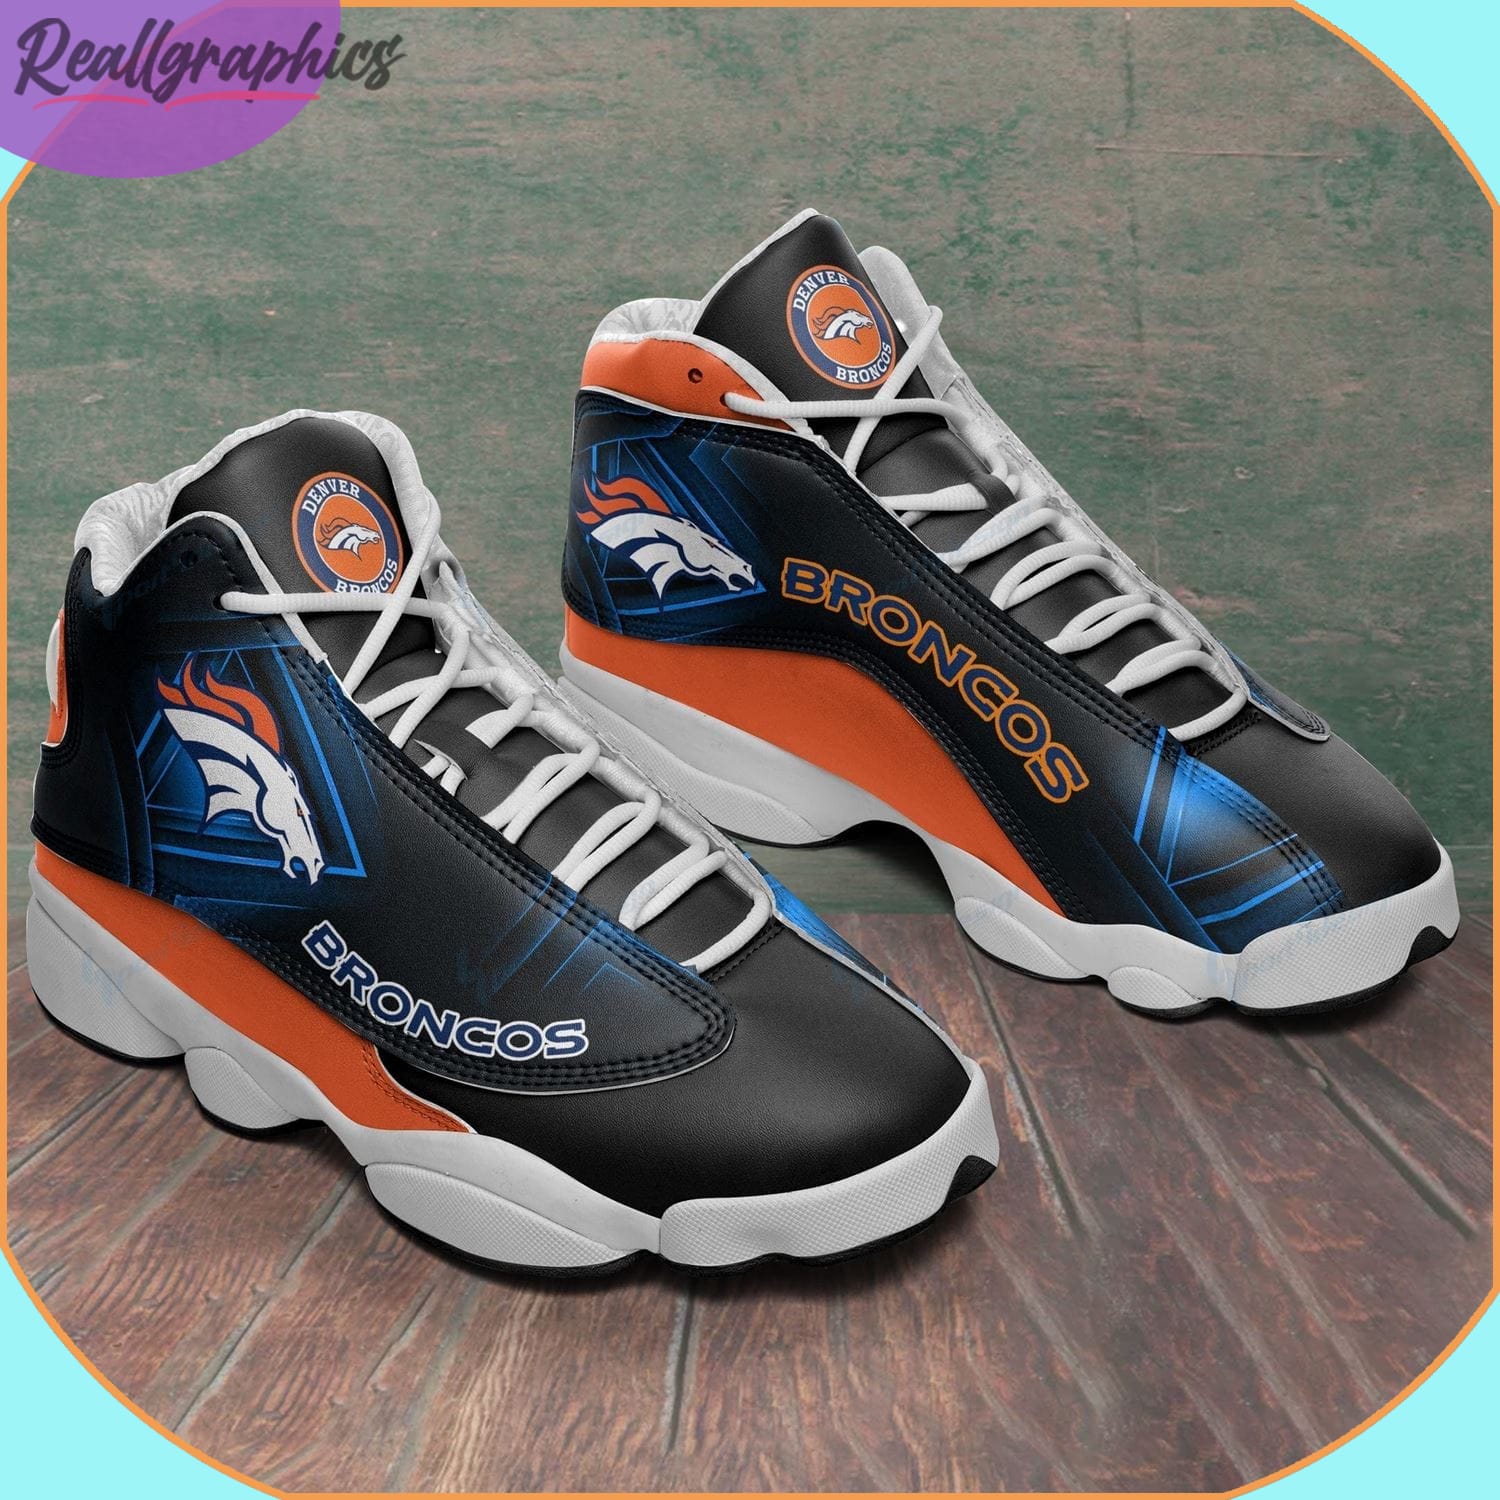 Denver Broncos AJordan 13 Sneaker, Denver Broncos Football Gifts for Fans